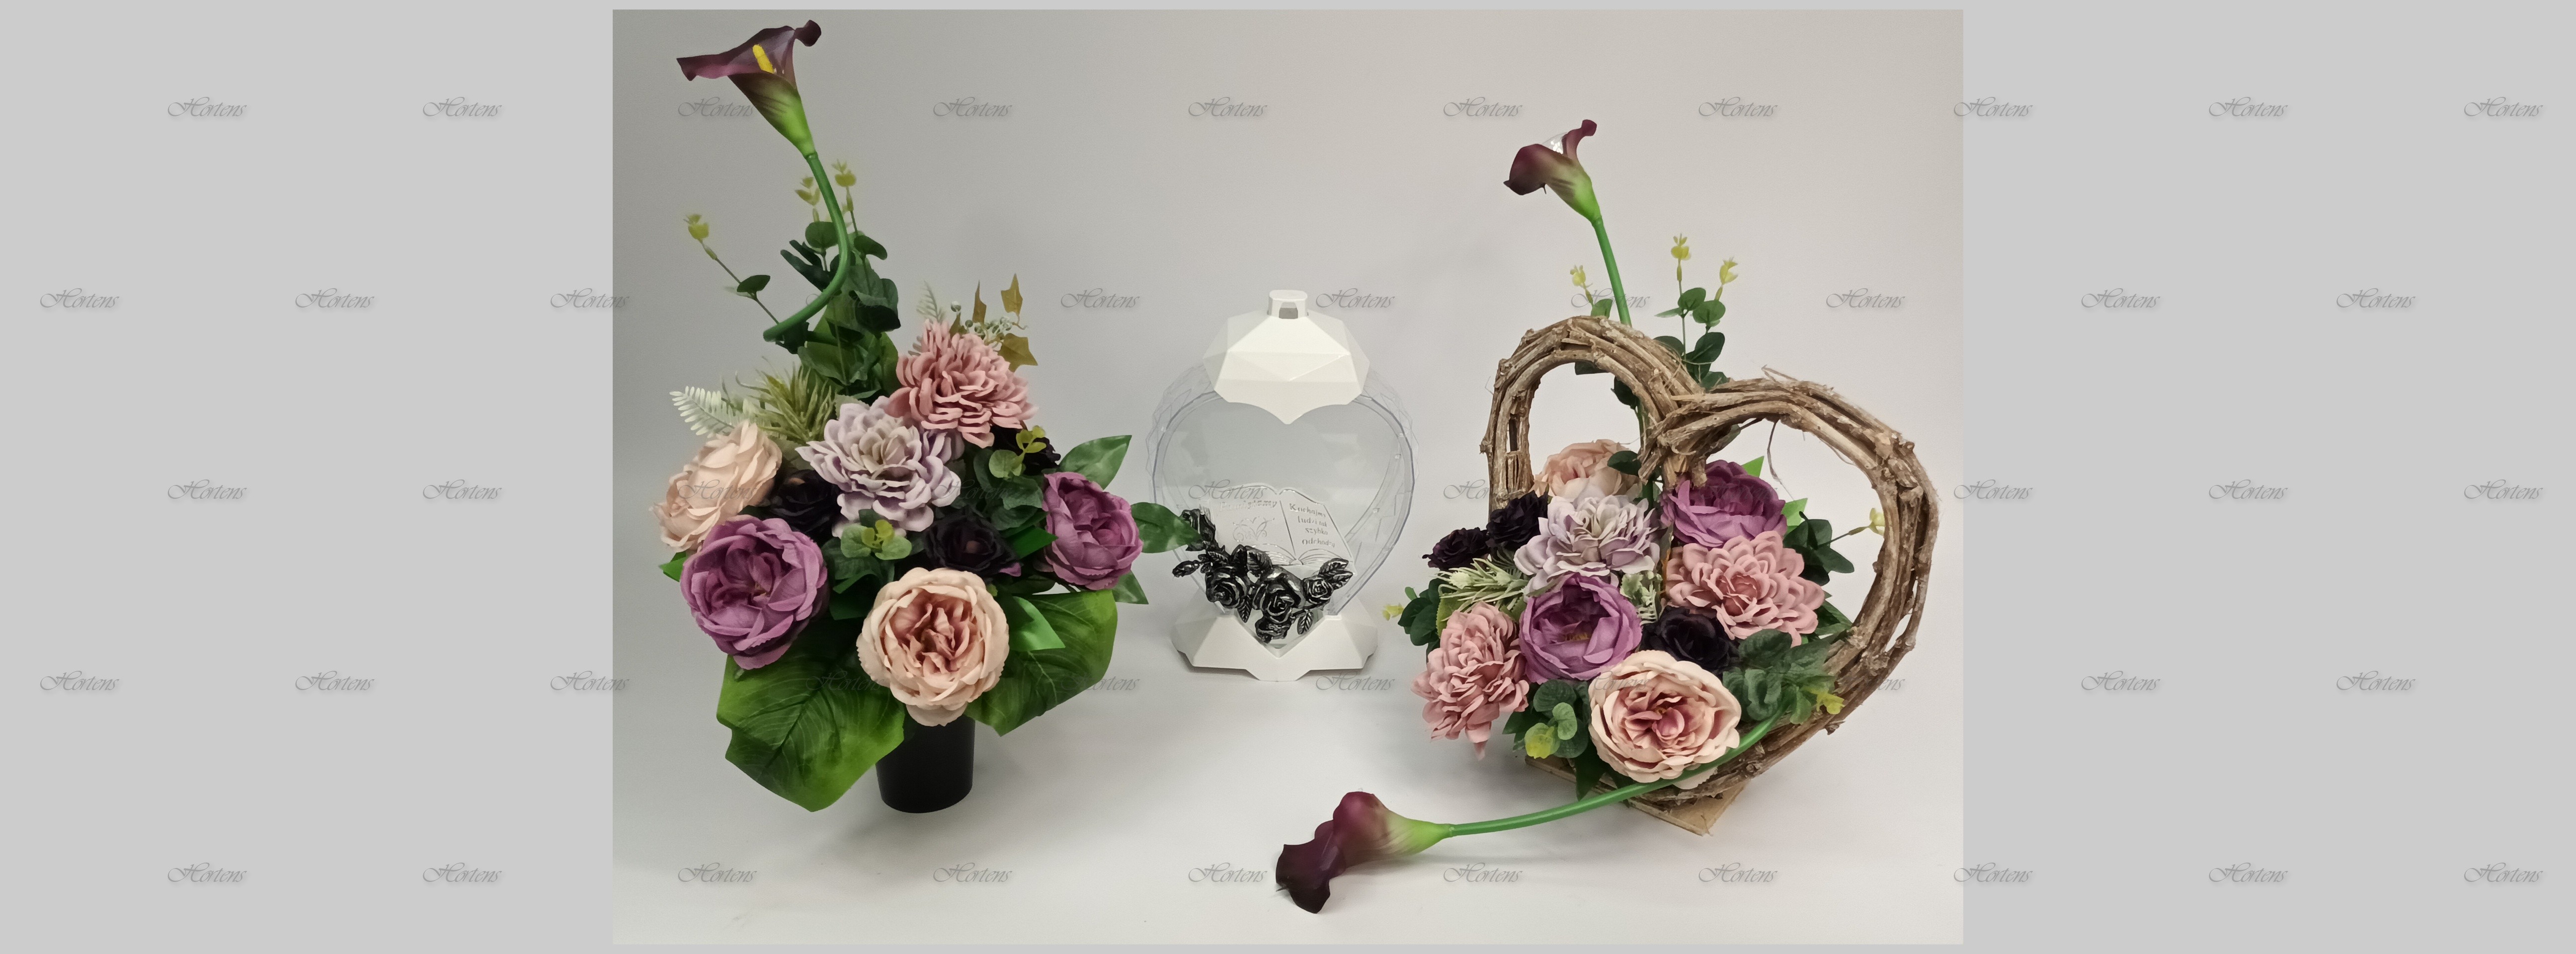 виробник свічок оптові продавці штучних квітів гіпсові фігури Польща